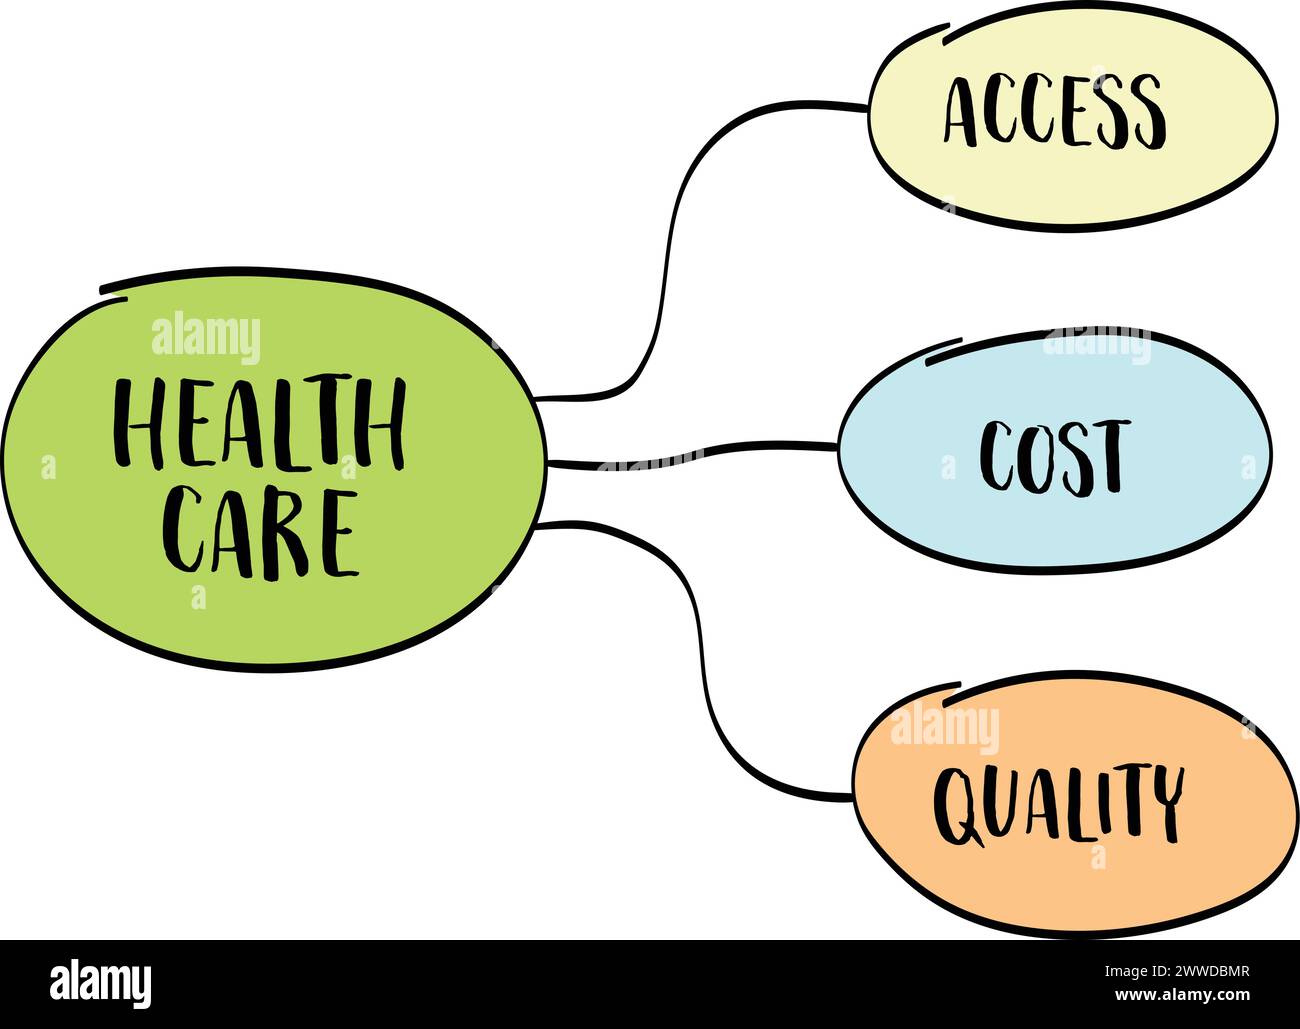 concetto di accesso, costi e qualità per l'assistenza sanitaria - schizzo della mappa mentale vettoriale Illustrazione Vettoriale